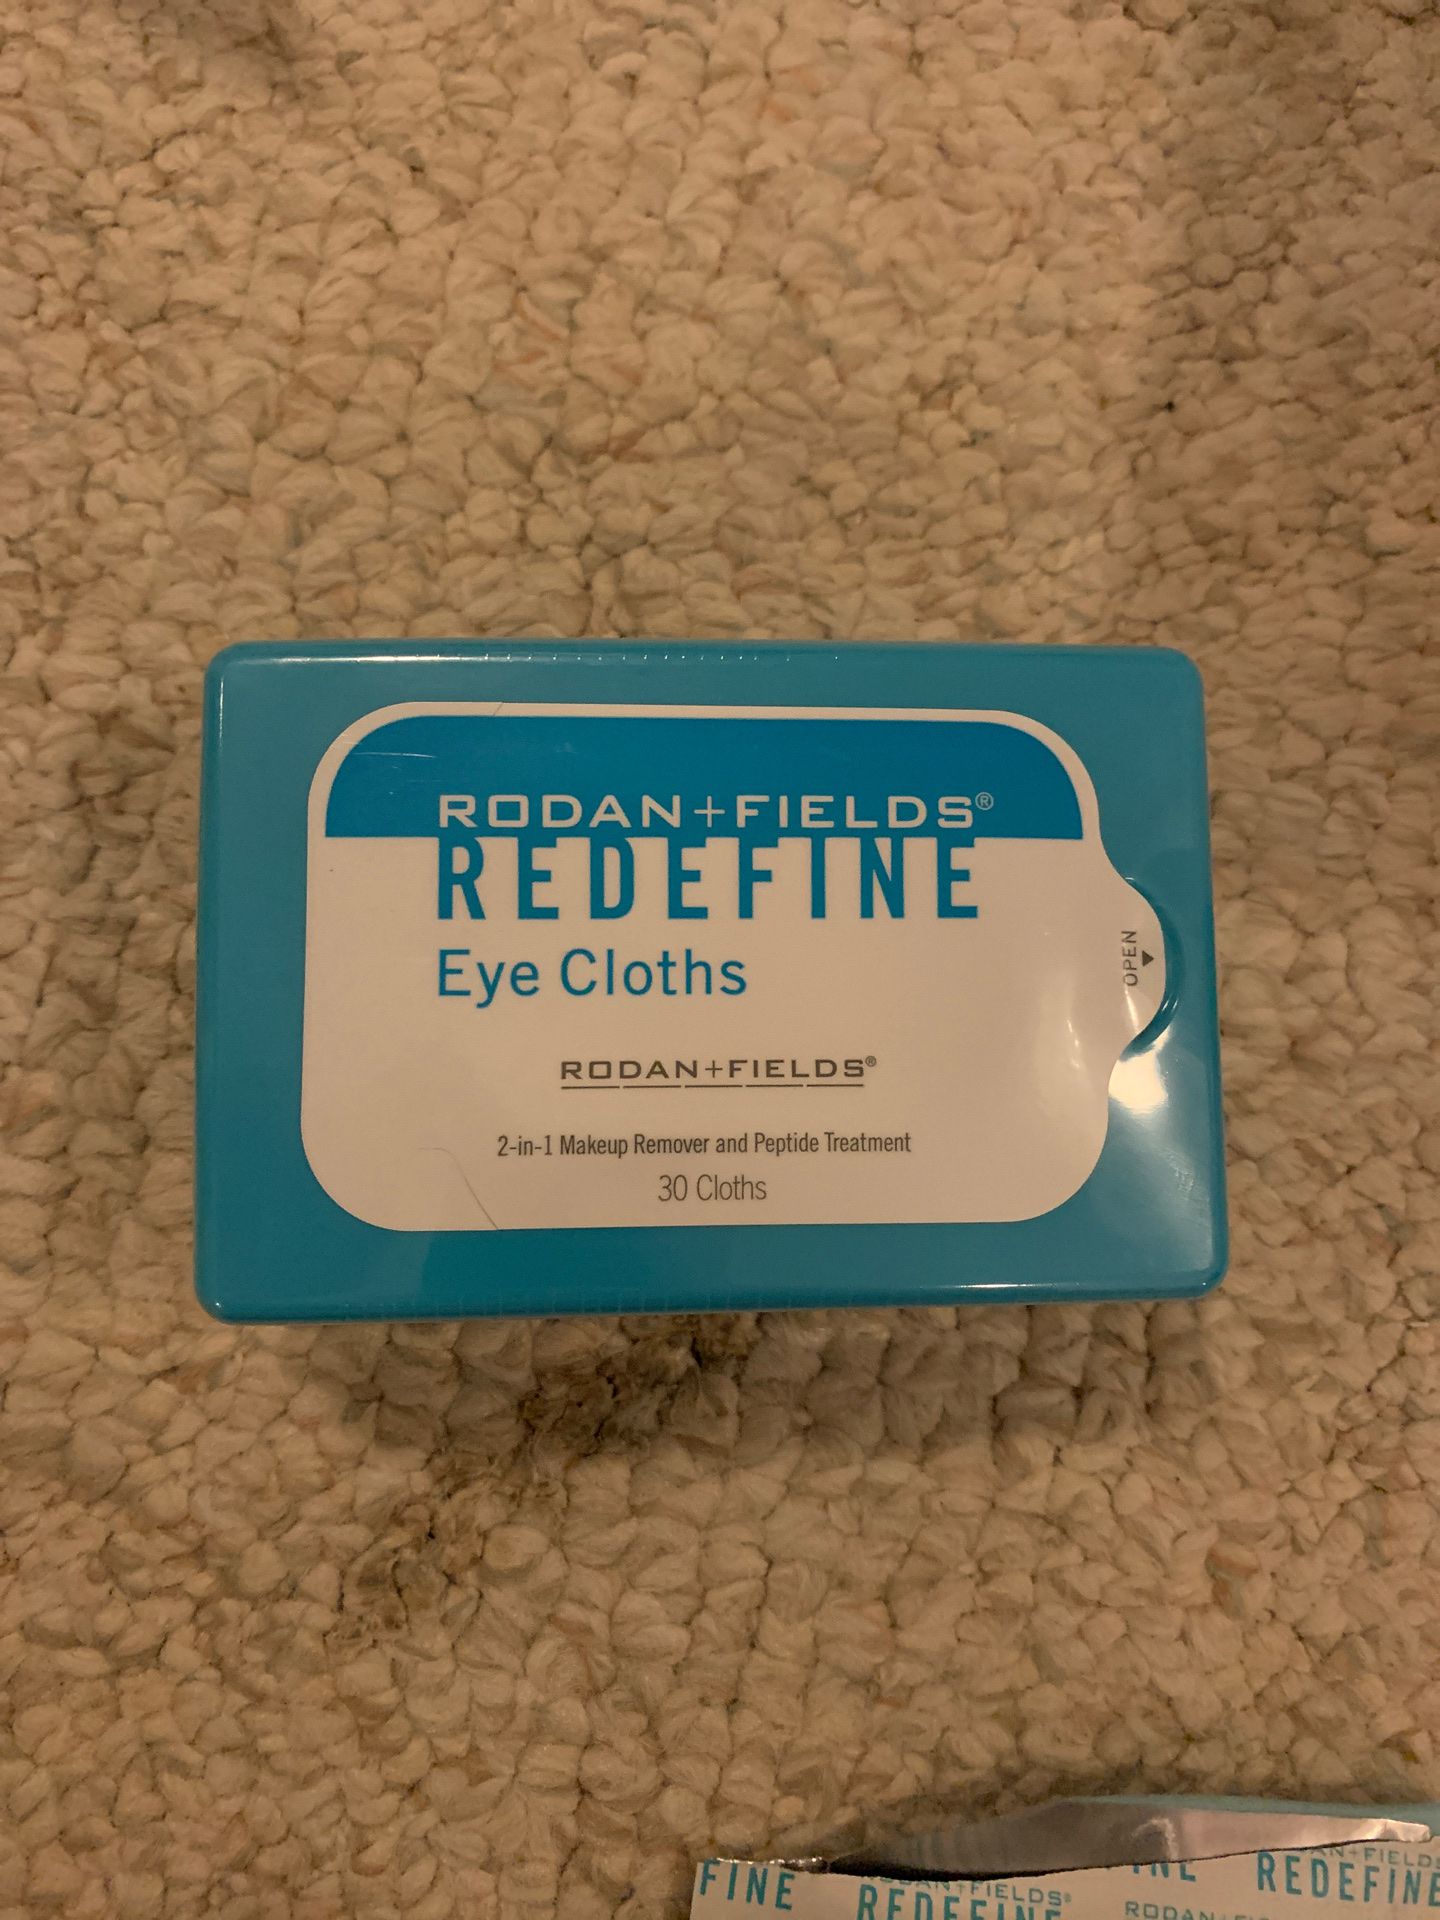 NEW Rodan + Fields Redefine Eye Cloths 30 2 in 1